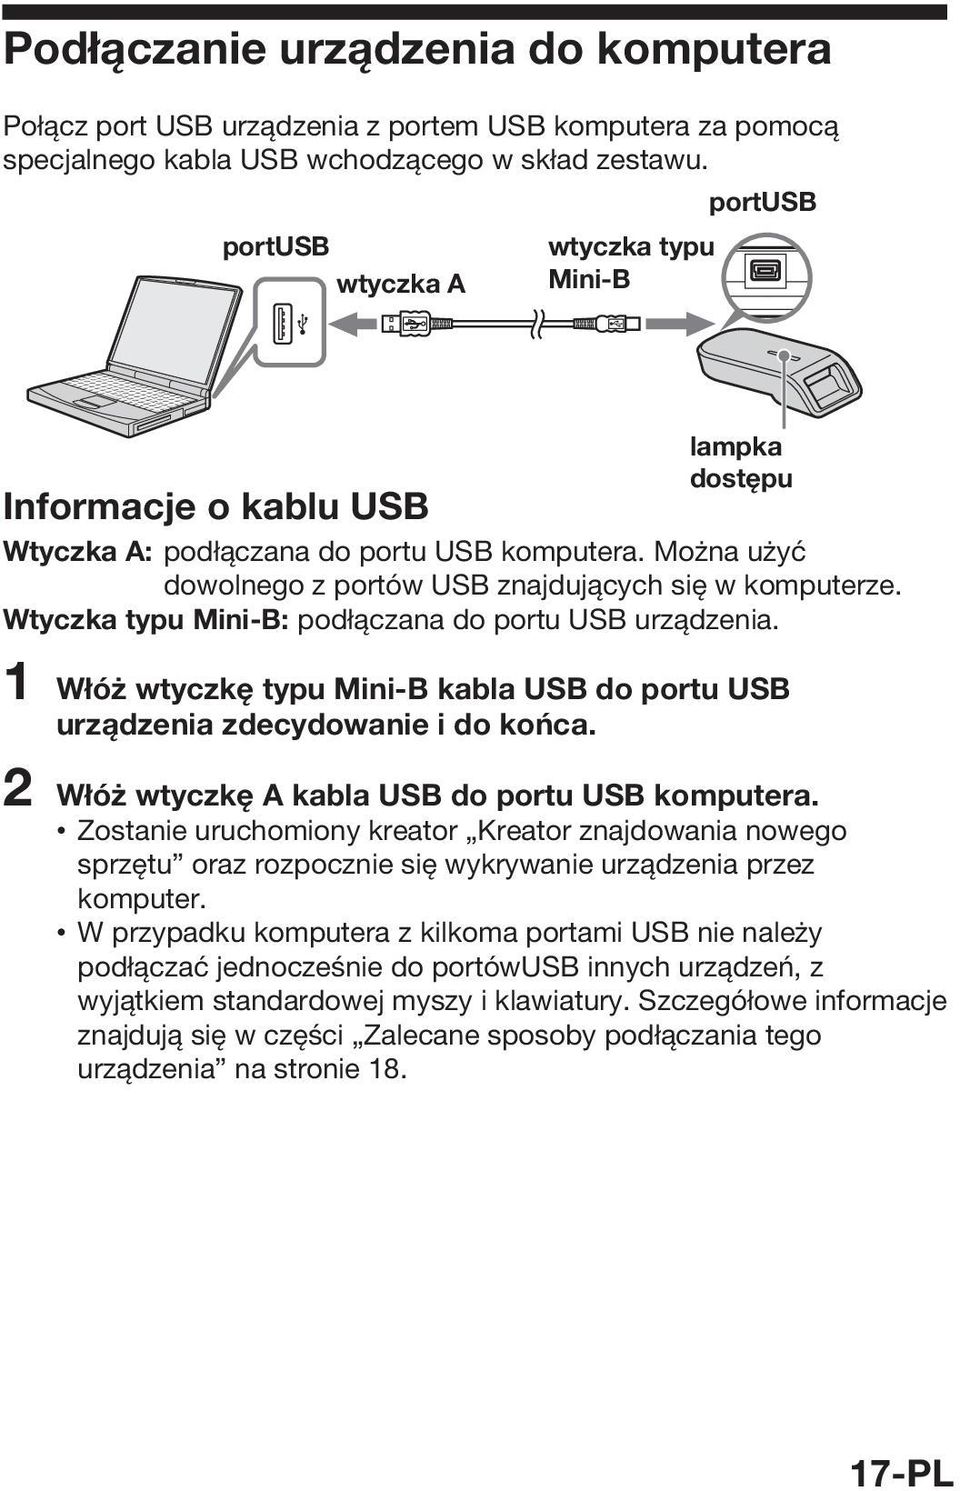 Wtyczka typu Mini-B: podłączana do portu USB urządzenia. 1 Włóż wtyczkę typu Mini-B kabla USB do portu USB urządzenia zdecydowanie i do końca. 2 Włóż wtyczkę A kabla USB do portu USB komputera.